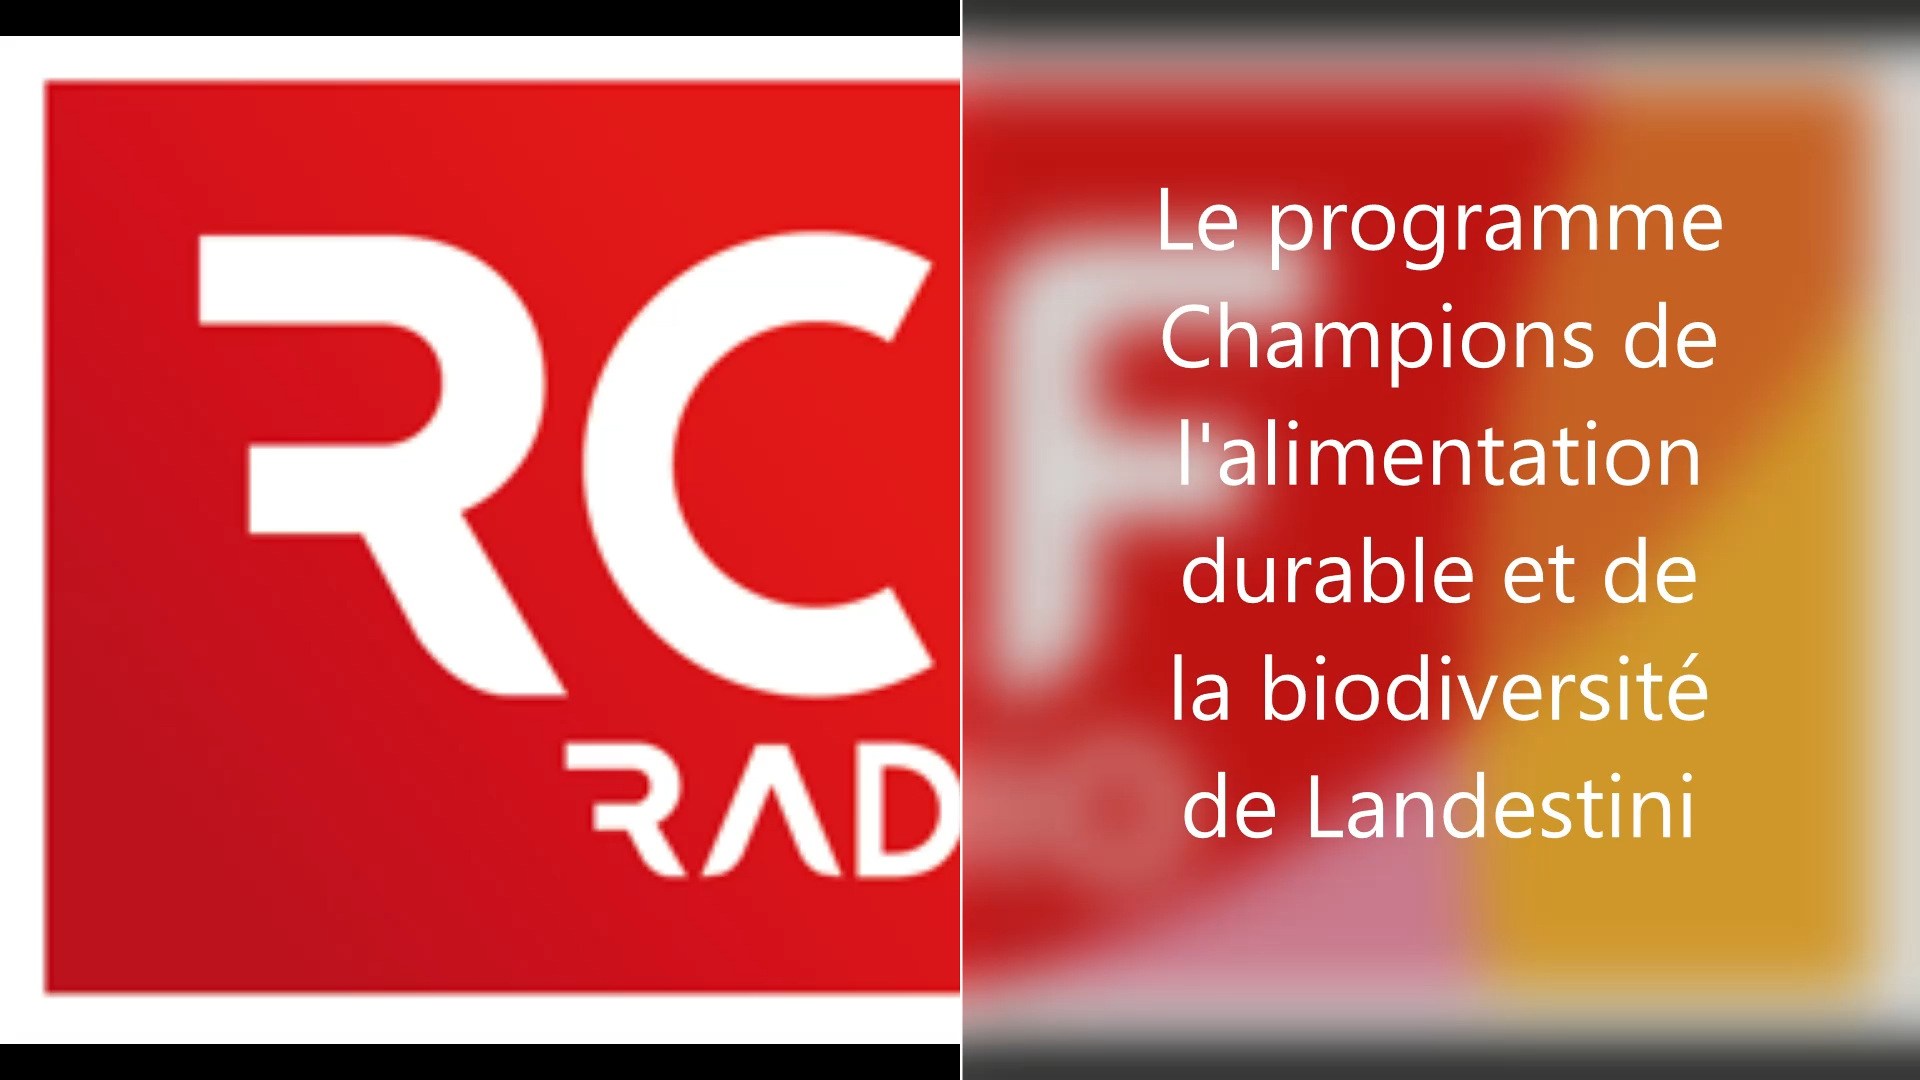 RCF Haute-Loire I Le programme Champions de l’alimentation durable et de la biodiversité de Landestini